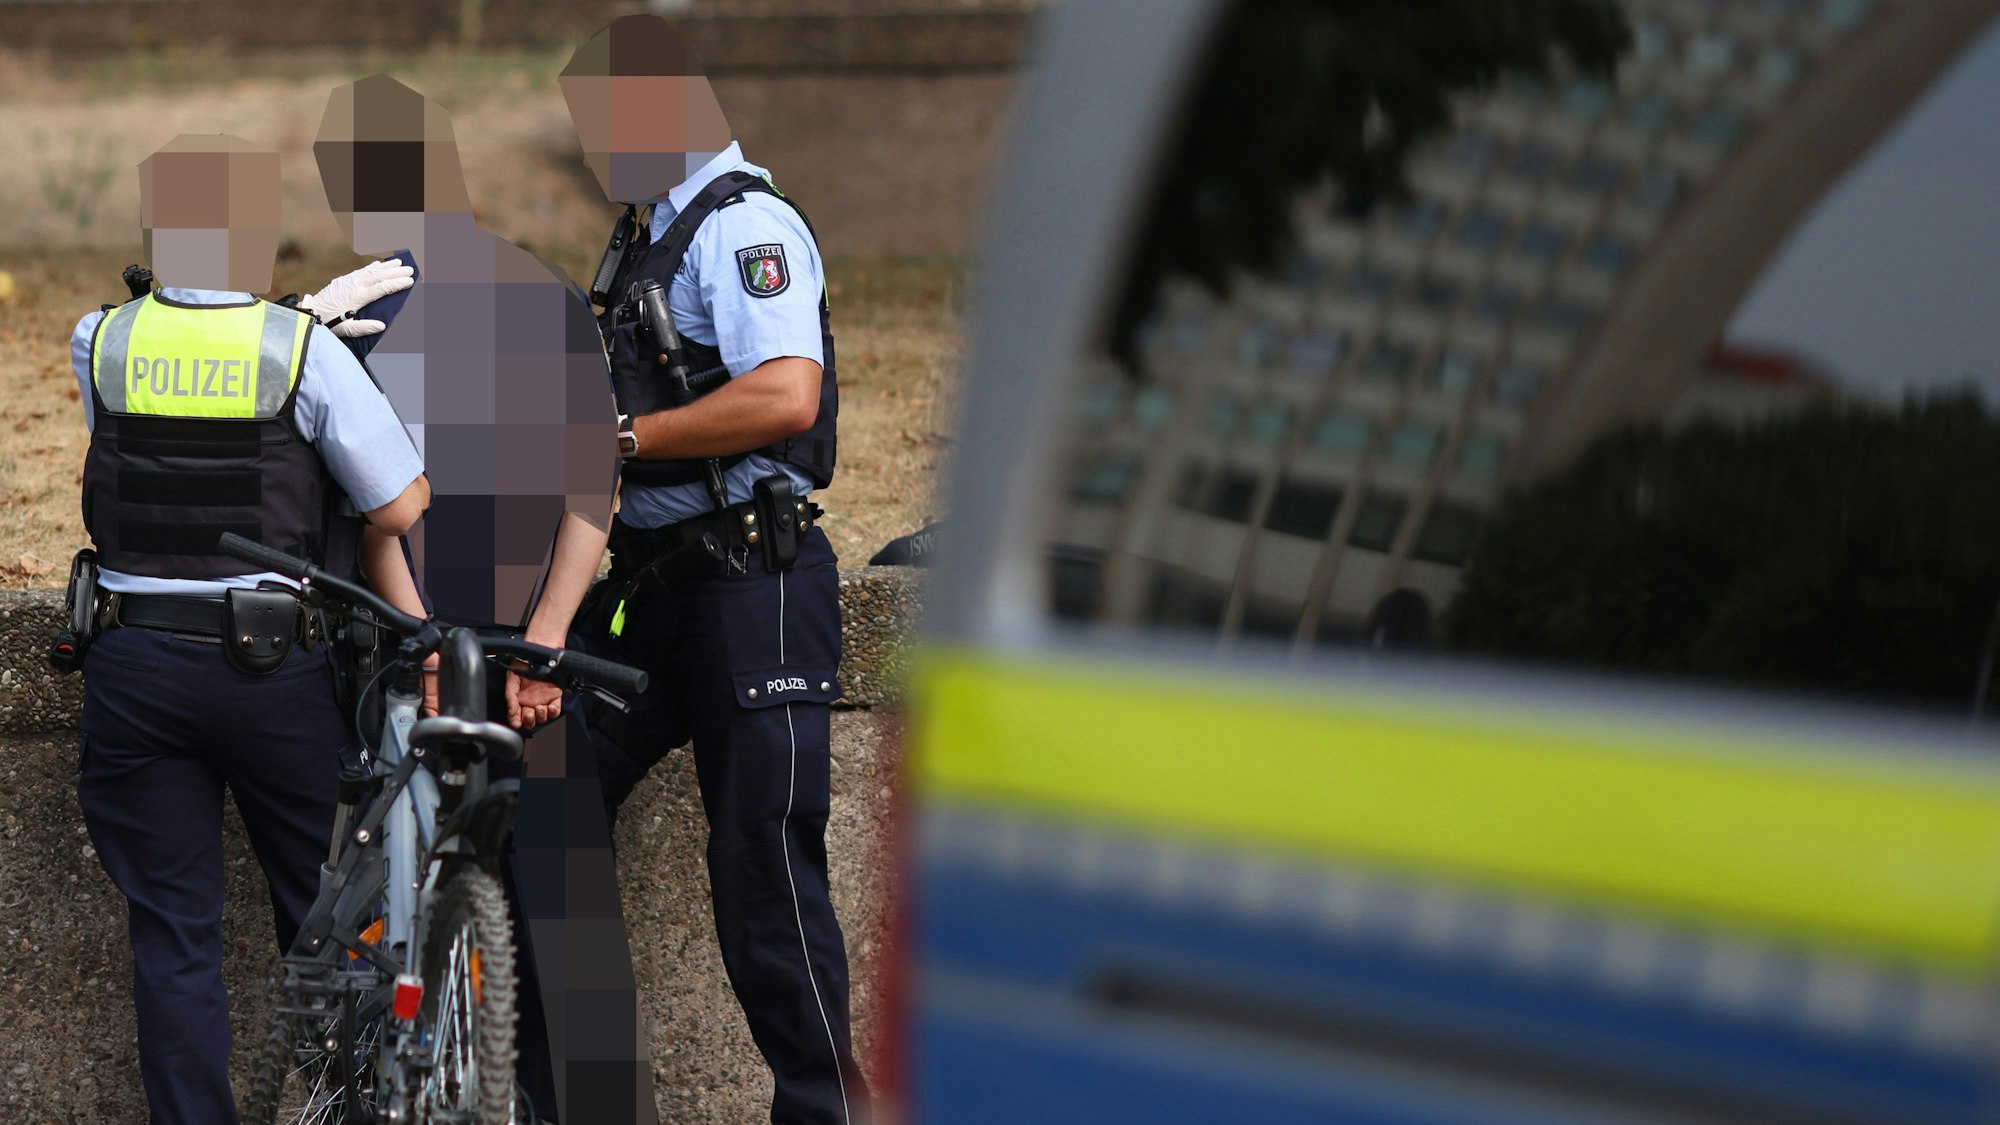 Polizisten nehmen einen Mann fest während einer Razzia gegen Drogendealer am Ebertplatz in Köln fest – unser Bild zeigt eine Szene aus dem vergangenen August.